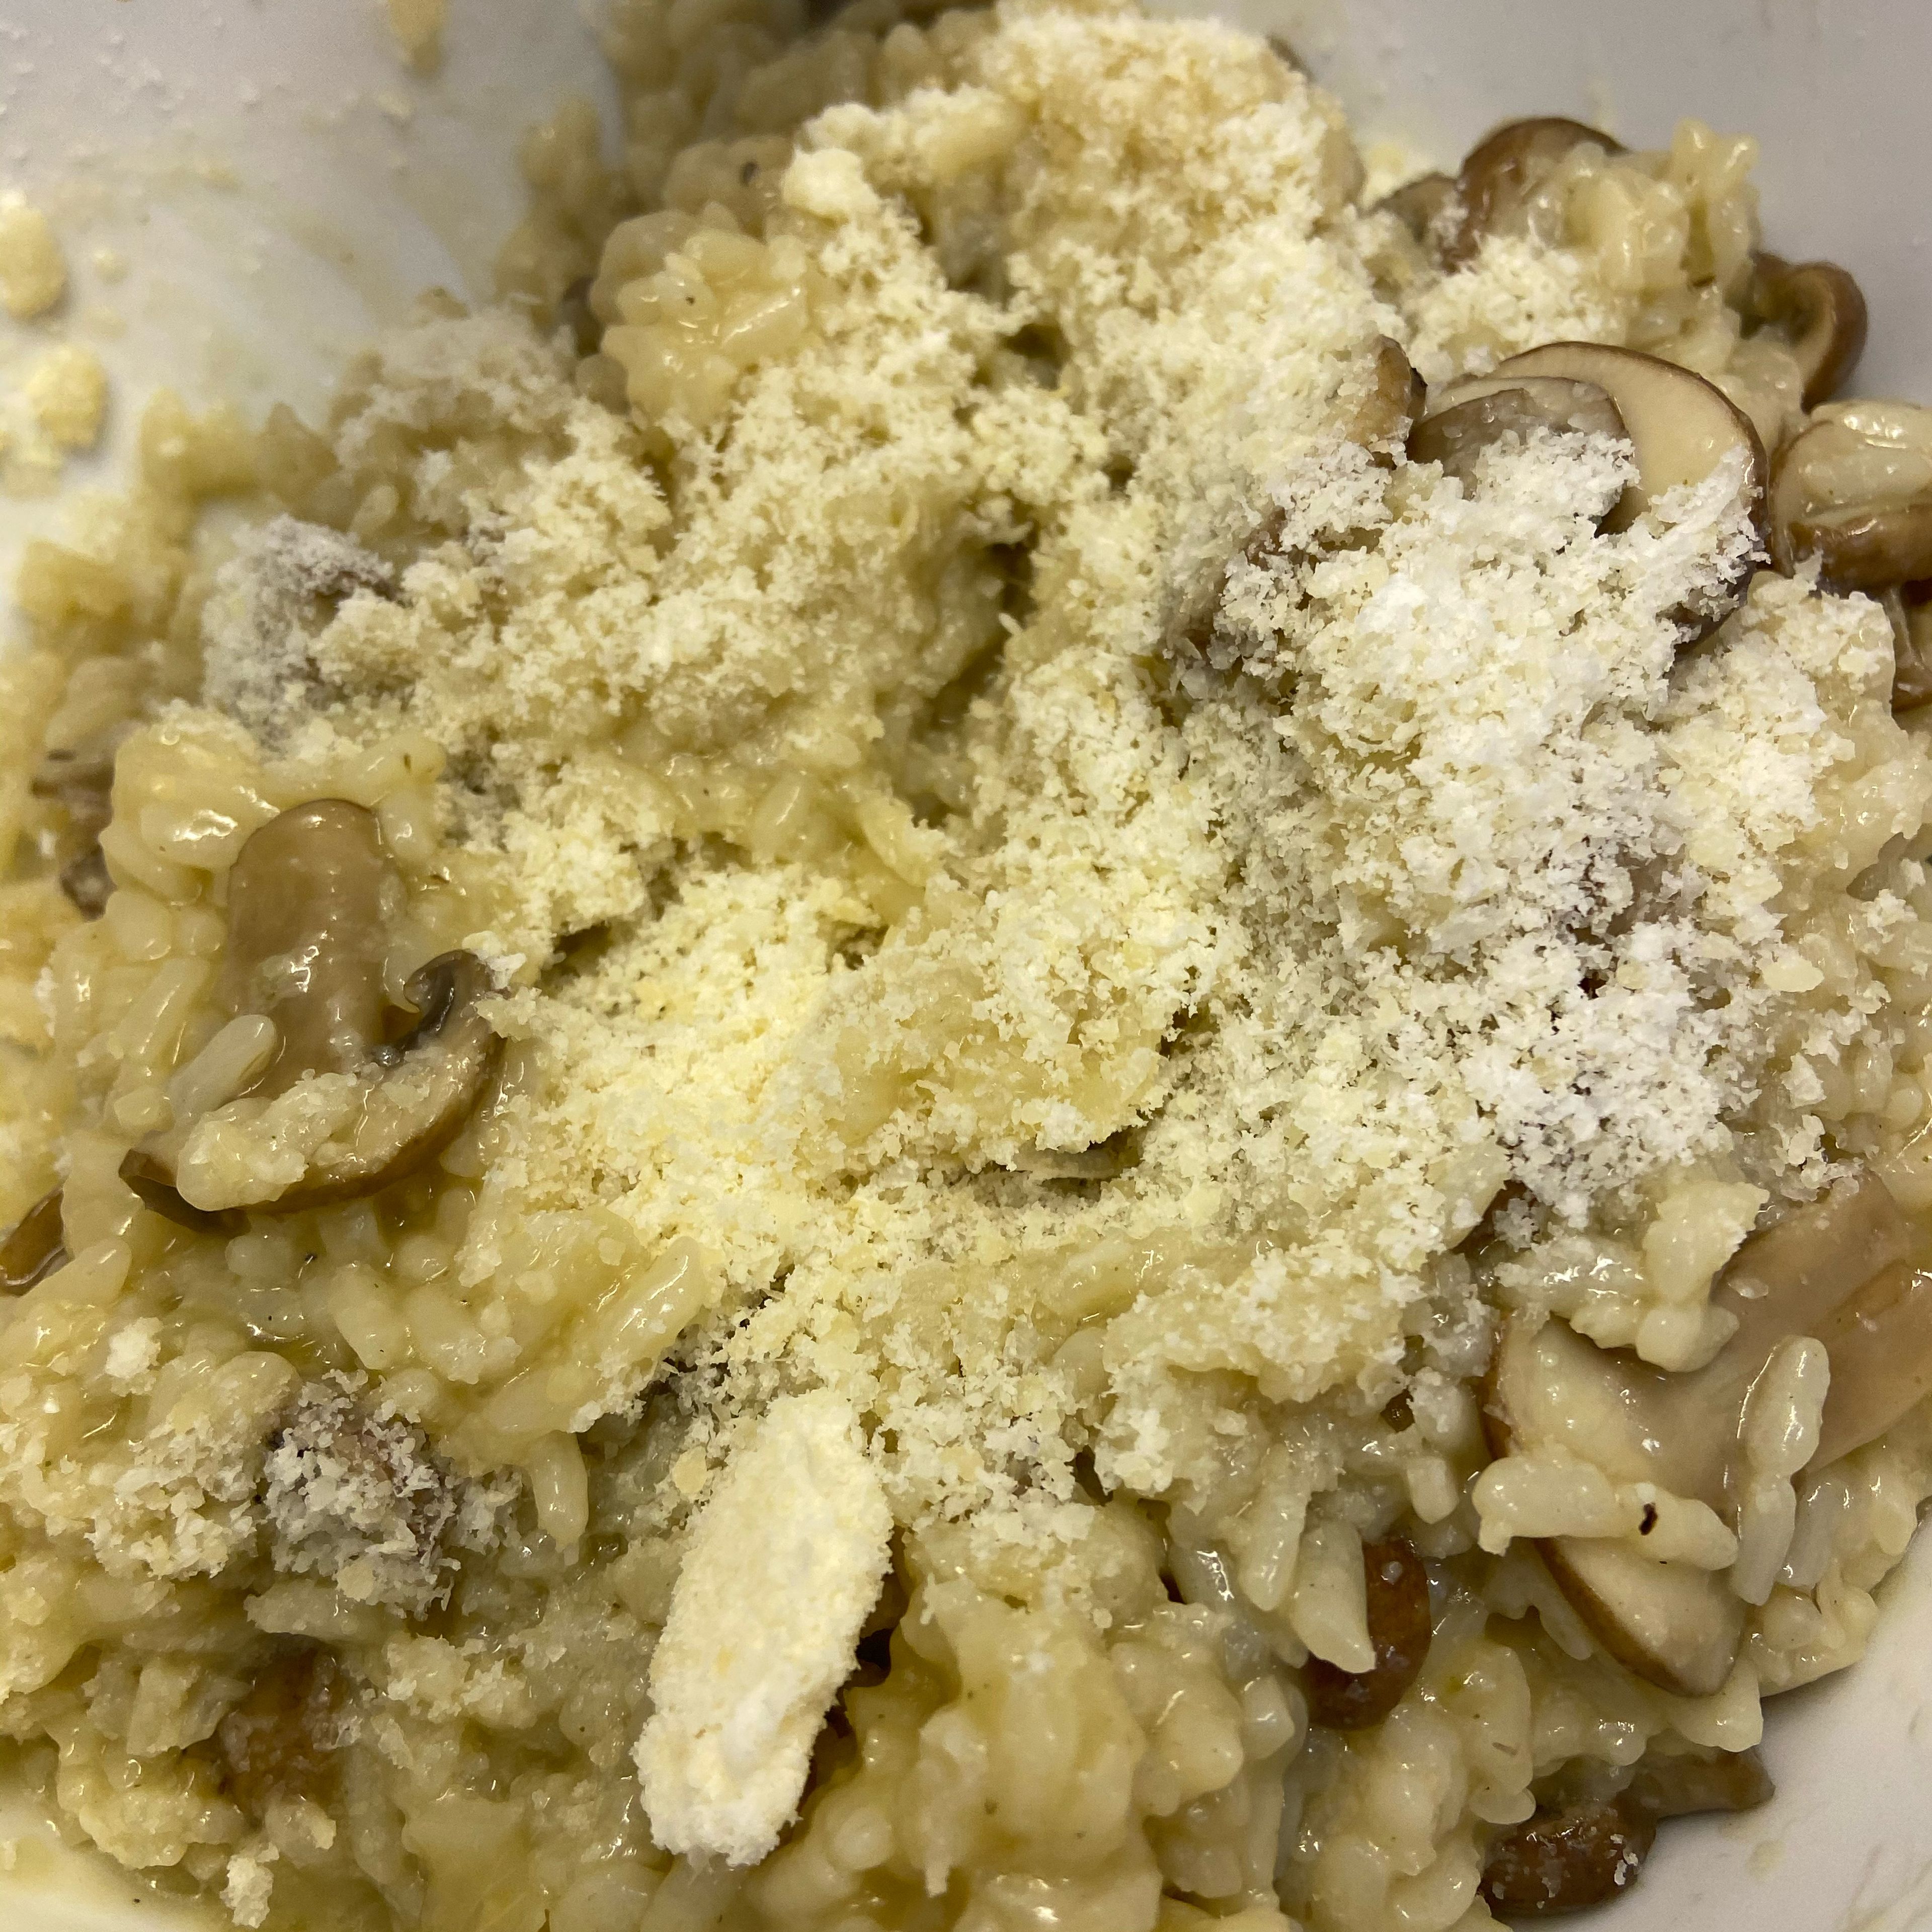 Die Risotto Masse in eine extra Schüssel geben und ca. 5 Minuten quellen lassen. Anschließend den geriebenen Parmesankäse unterheben.